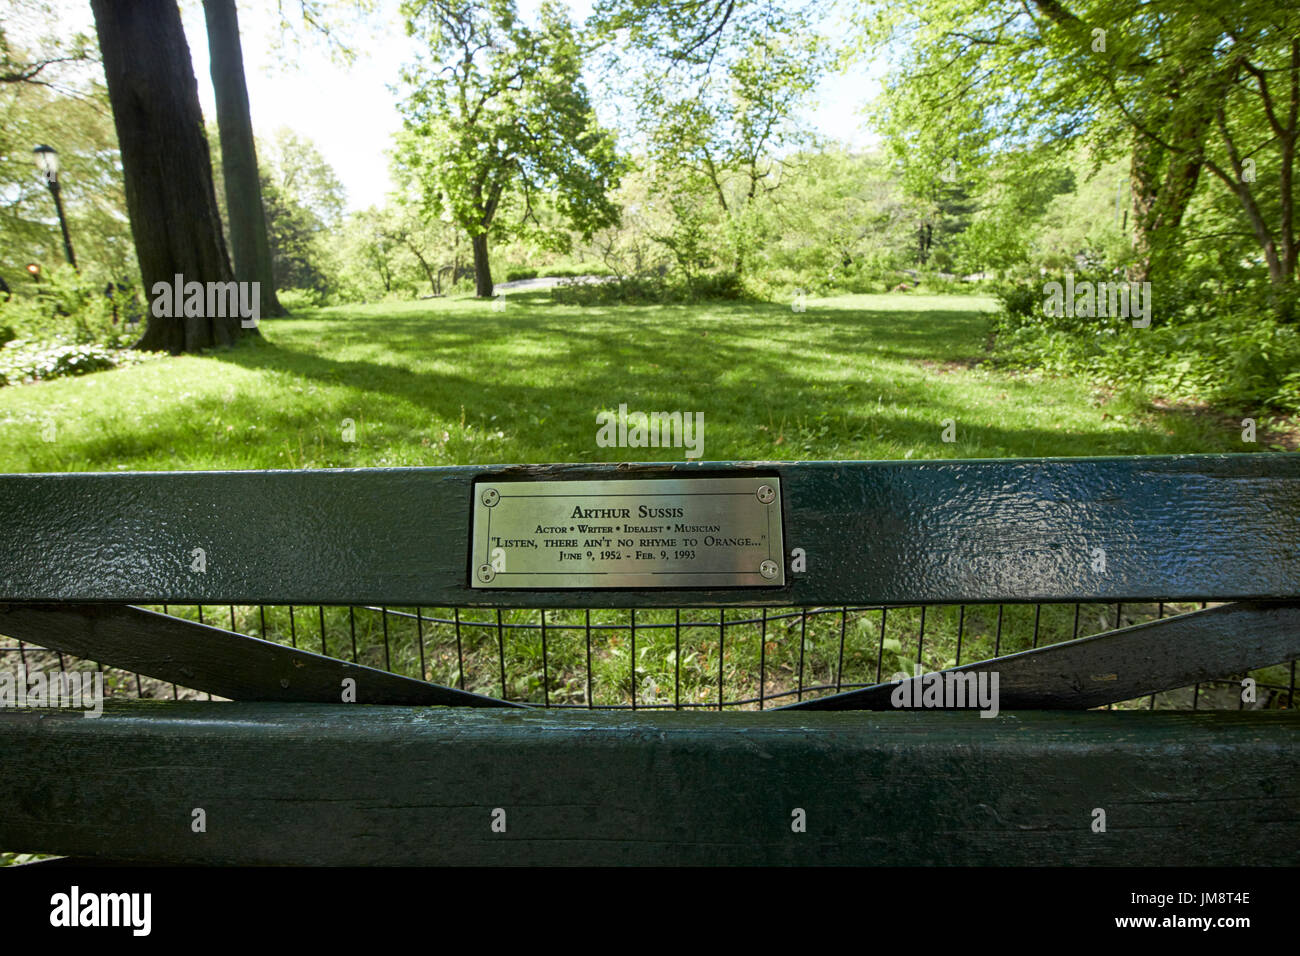 Banc de parc en parc central dédié à Arthur sussis New York USA Banque D'Images